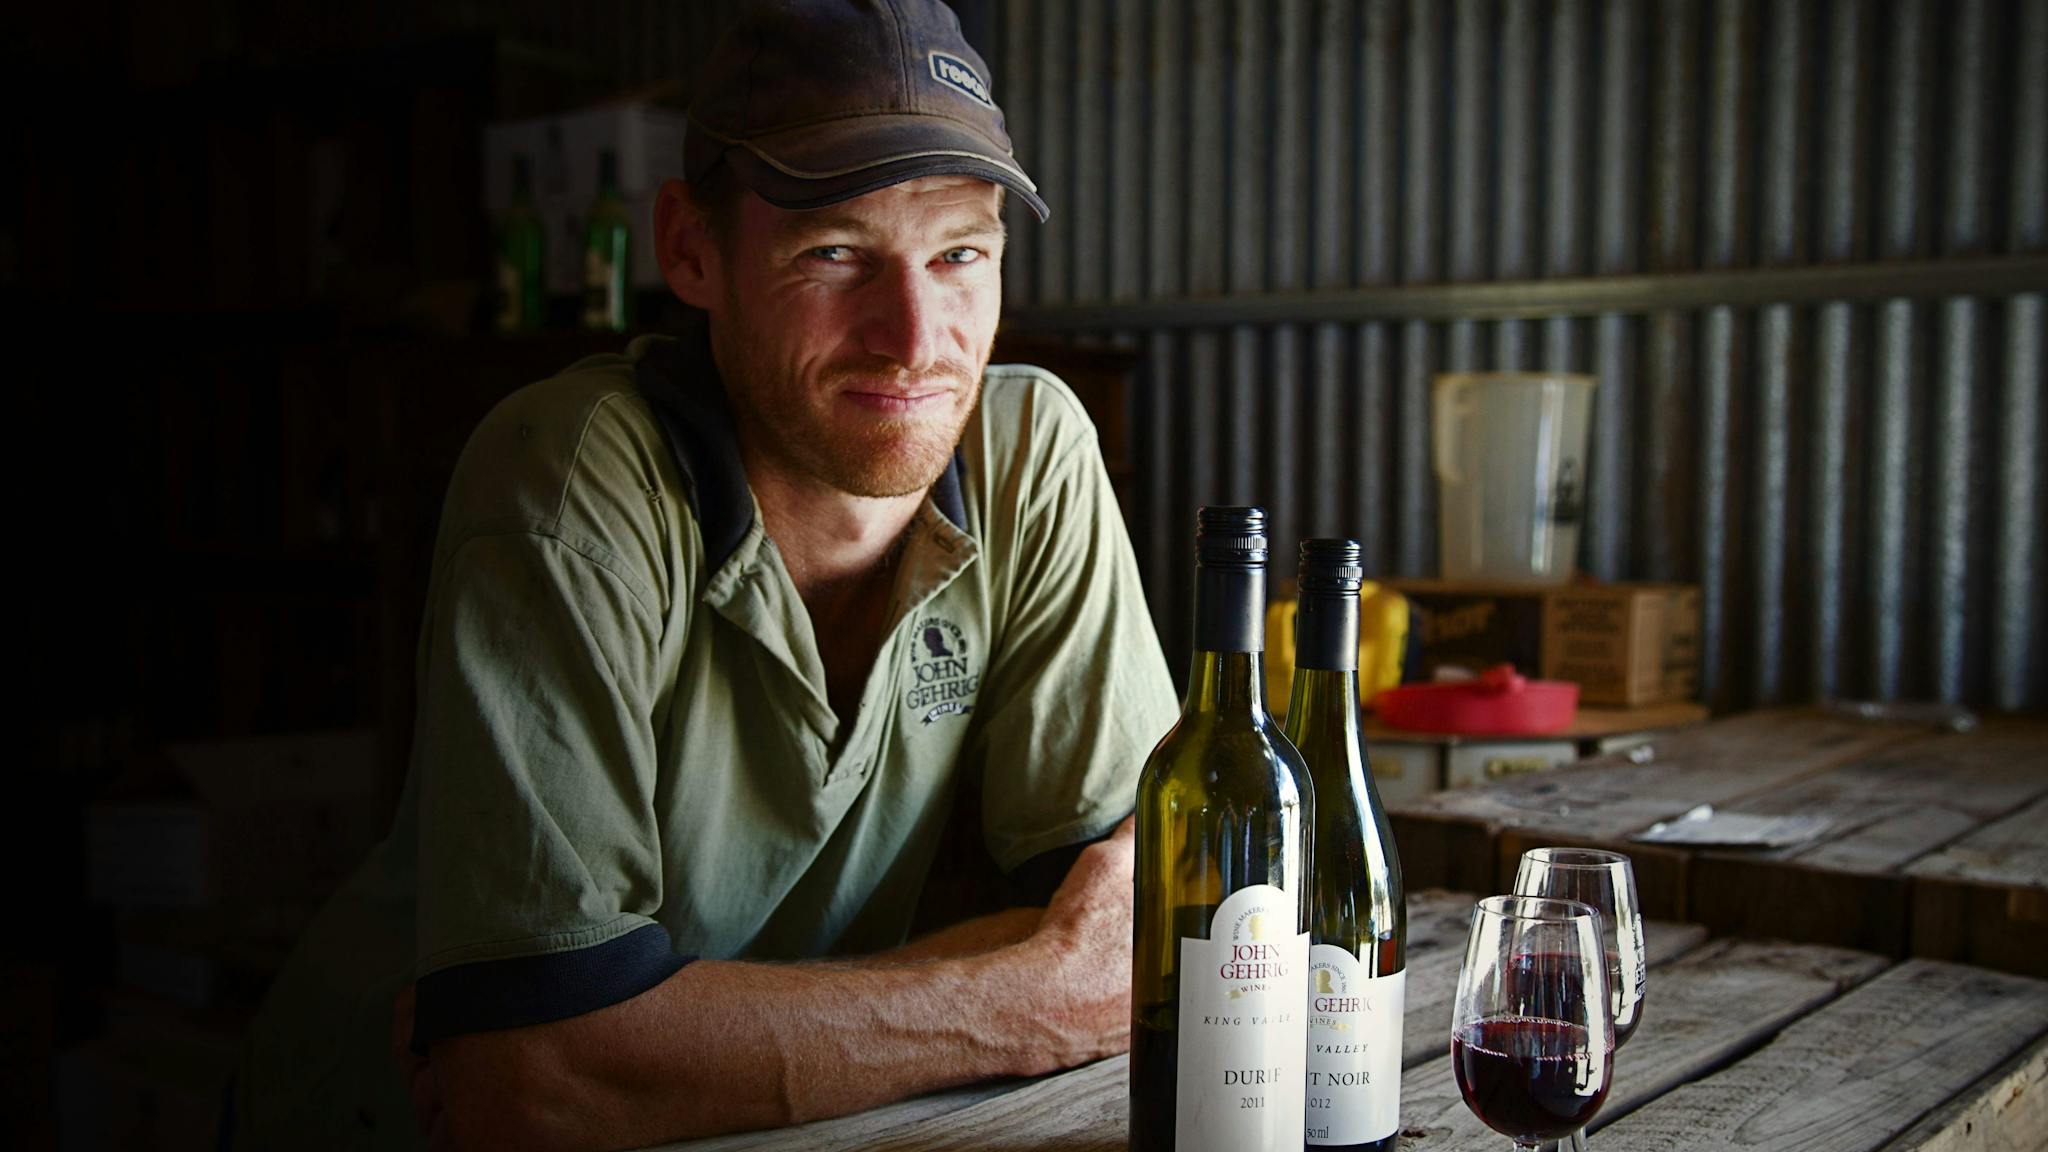 Winemaker Ross Gehrig